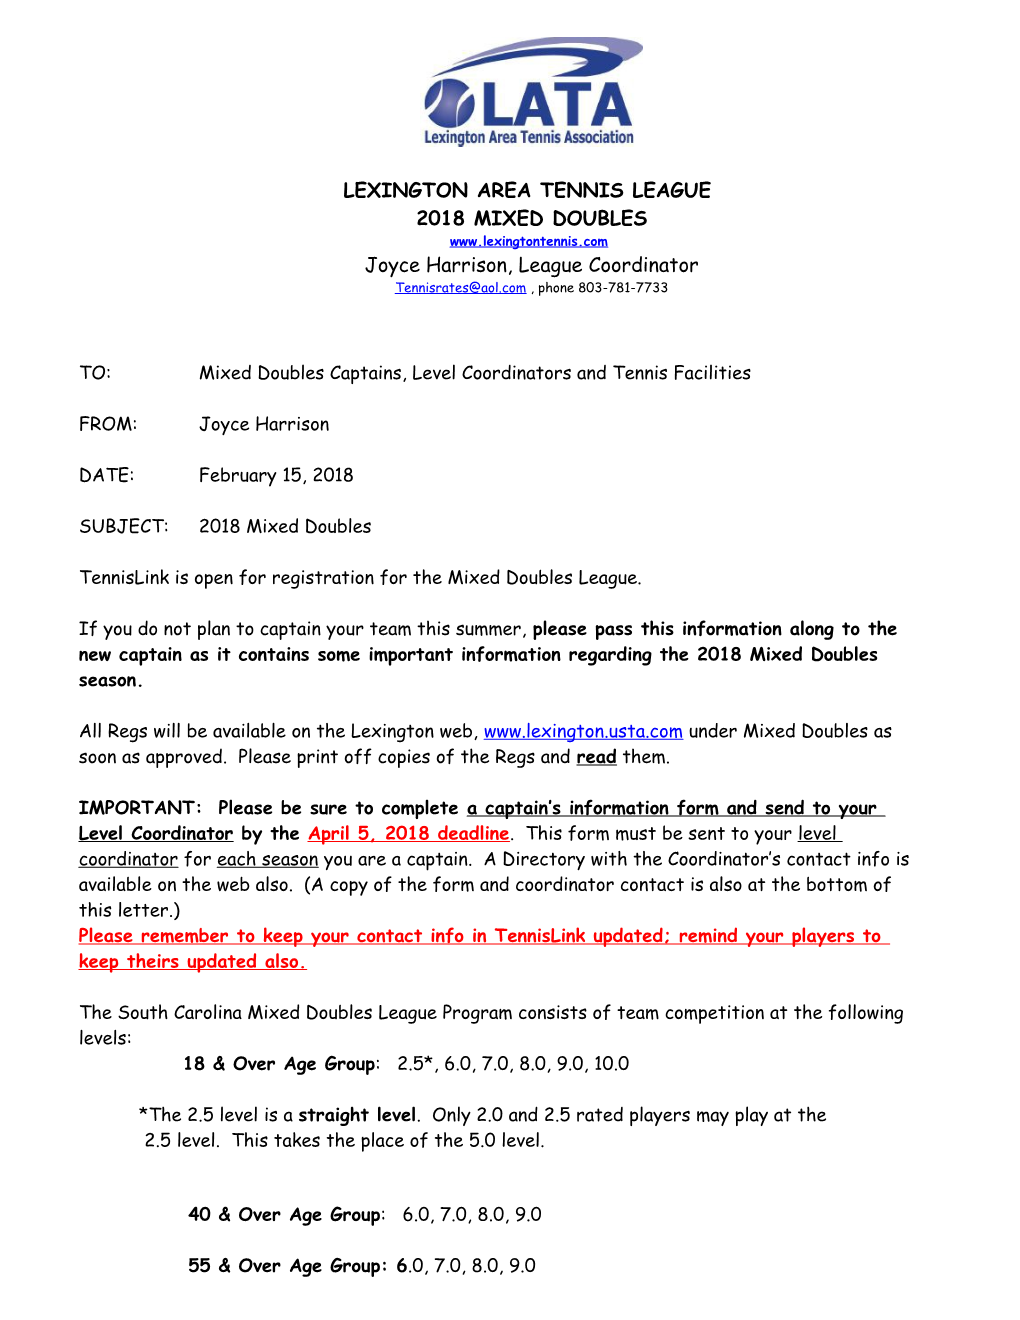 Lexington Area Tennis League (Lata)